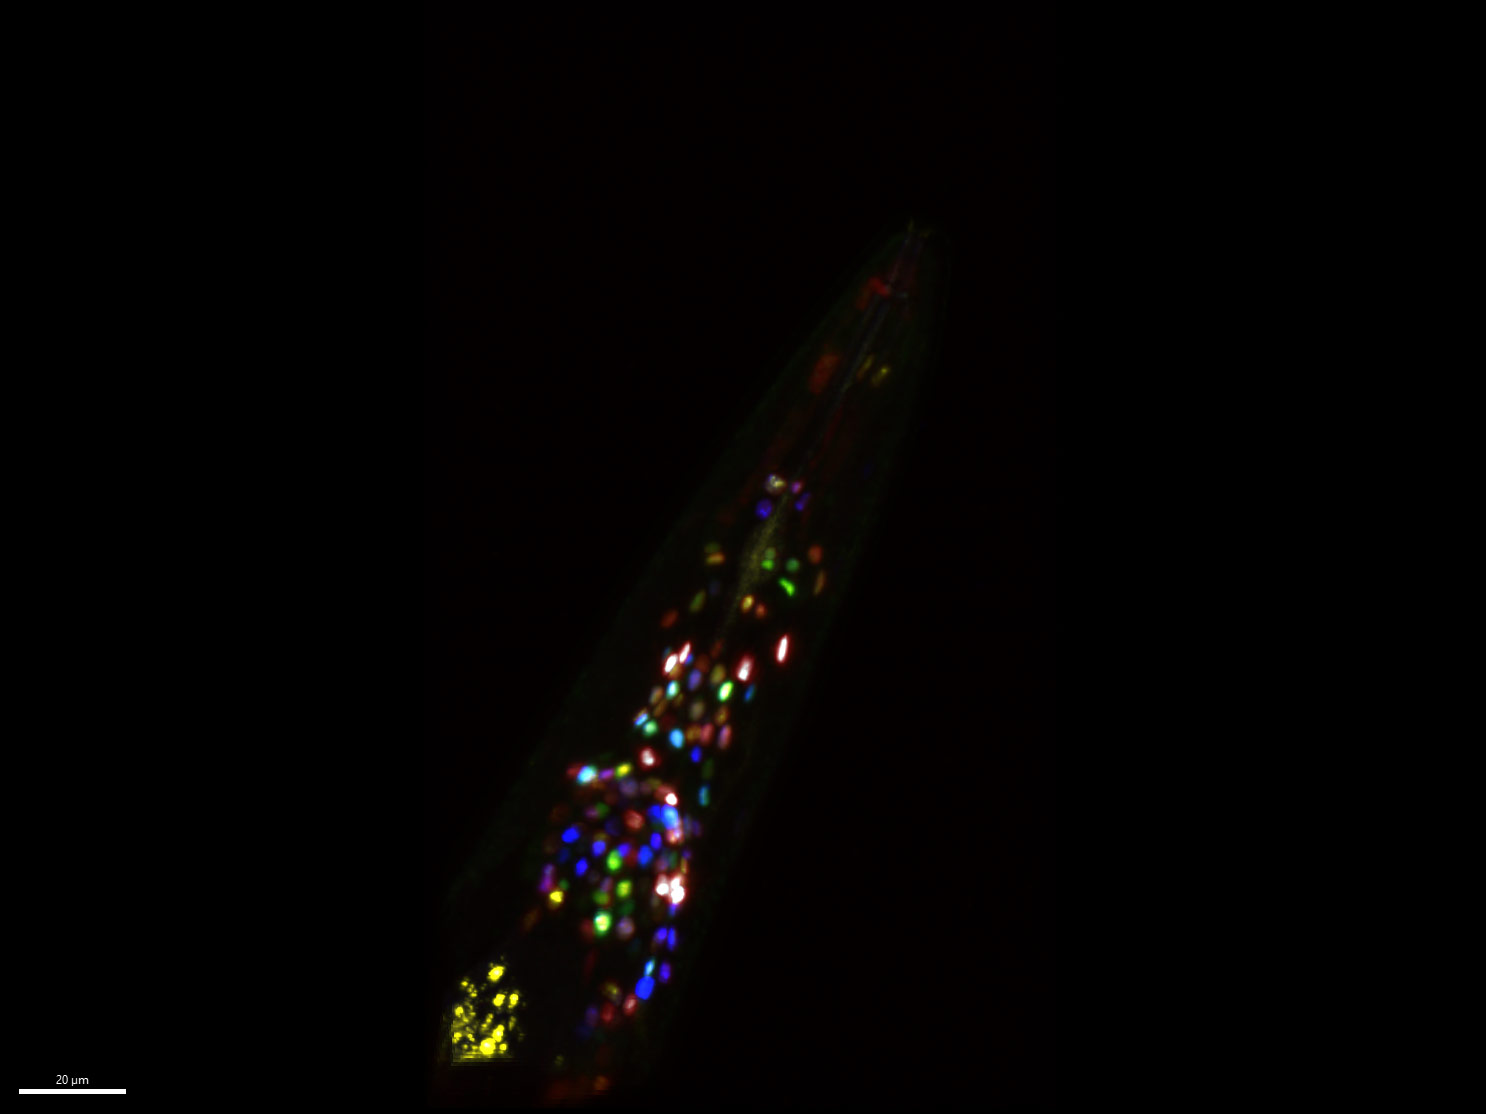 NeuroPAL 세포주와 GCaMP 세포주가 혼합된 꼬마선충(C. elegans) 하이브리드 세포주의 다색 이미지